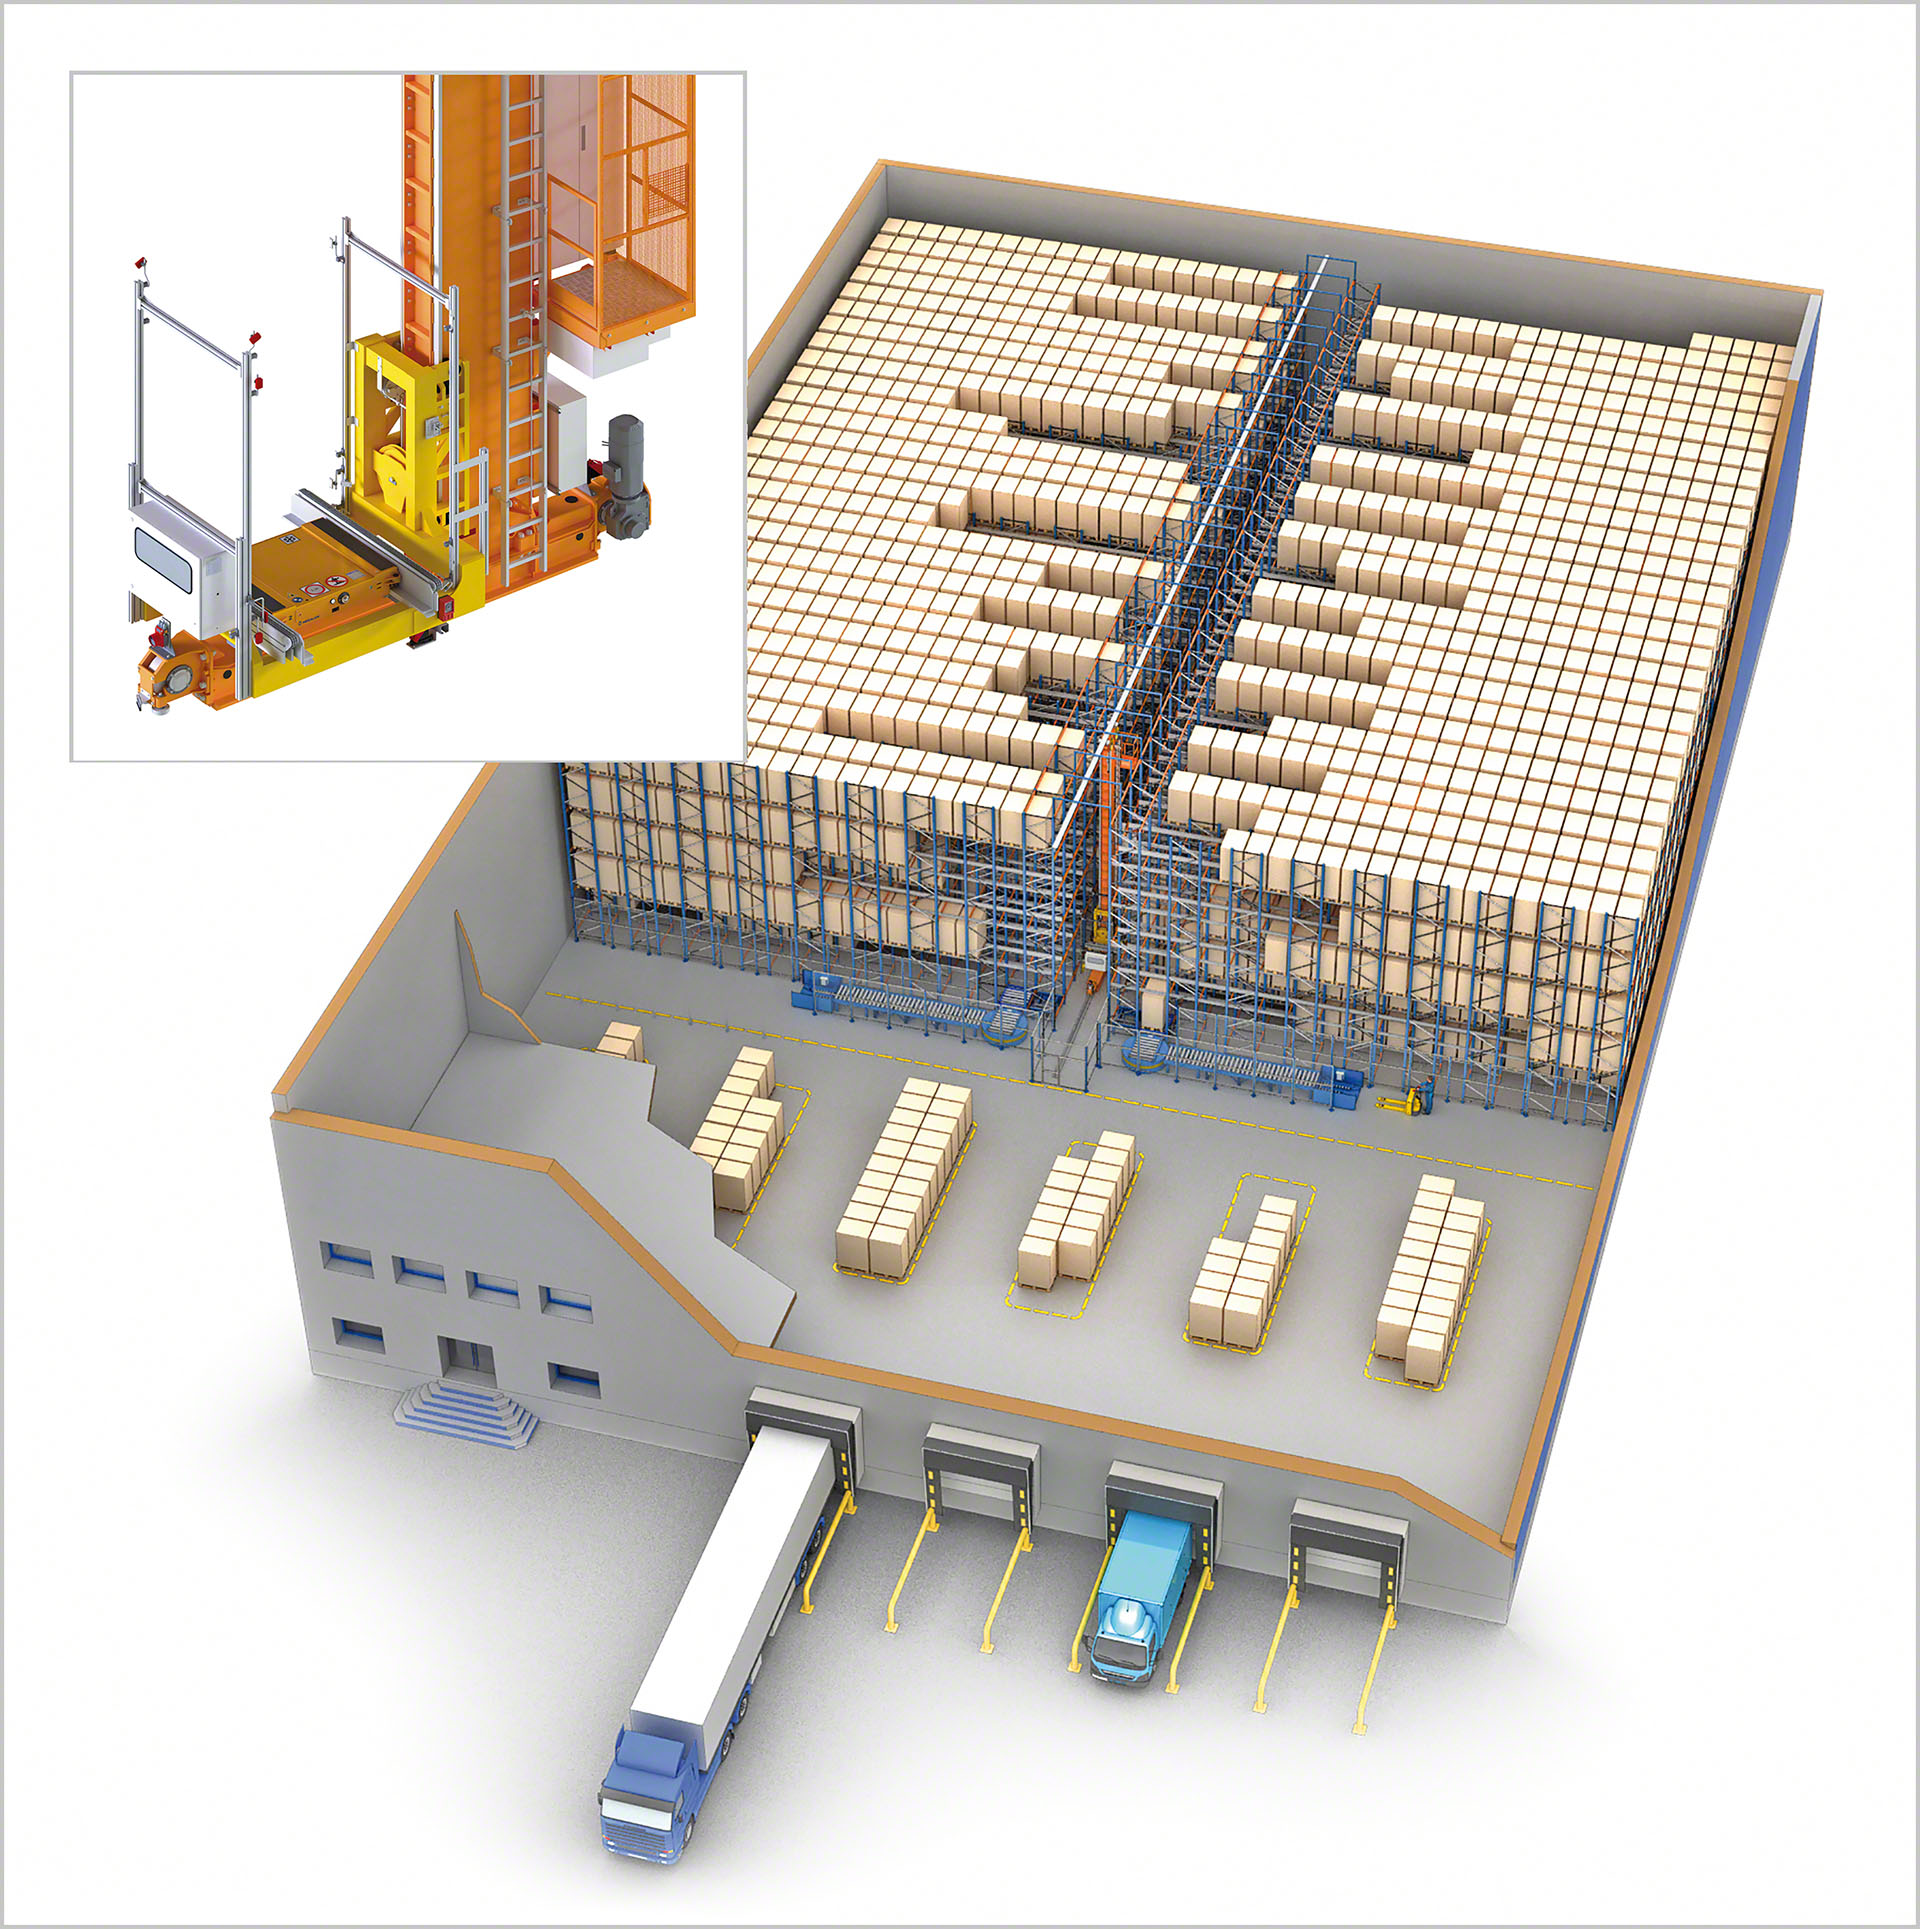 Associer transstockeur et APS permet d'optimiser la capacité de stockage : une seule allée de petites dimensions est nécessaire